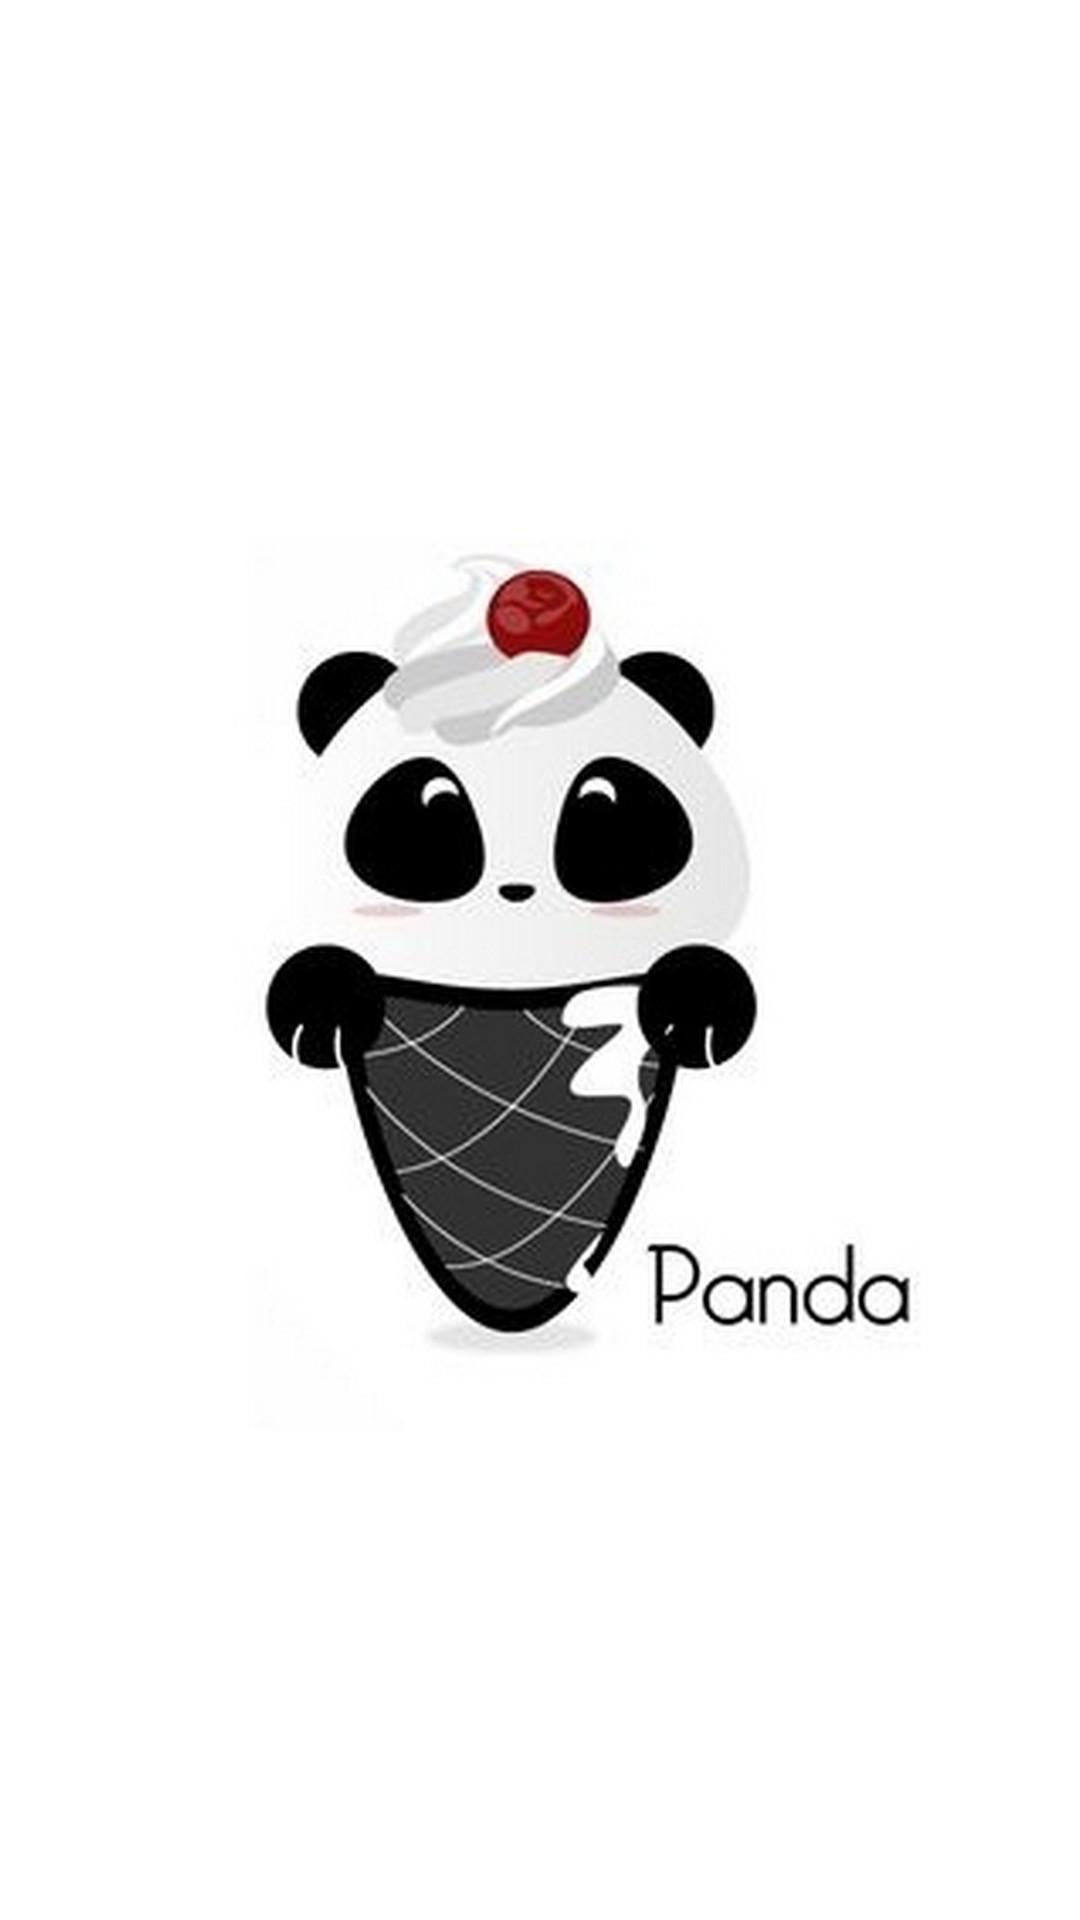 Cute Panda Drawing iPhone Wallpaper 3D iPhone Wallpaper